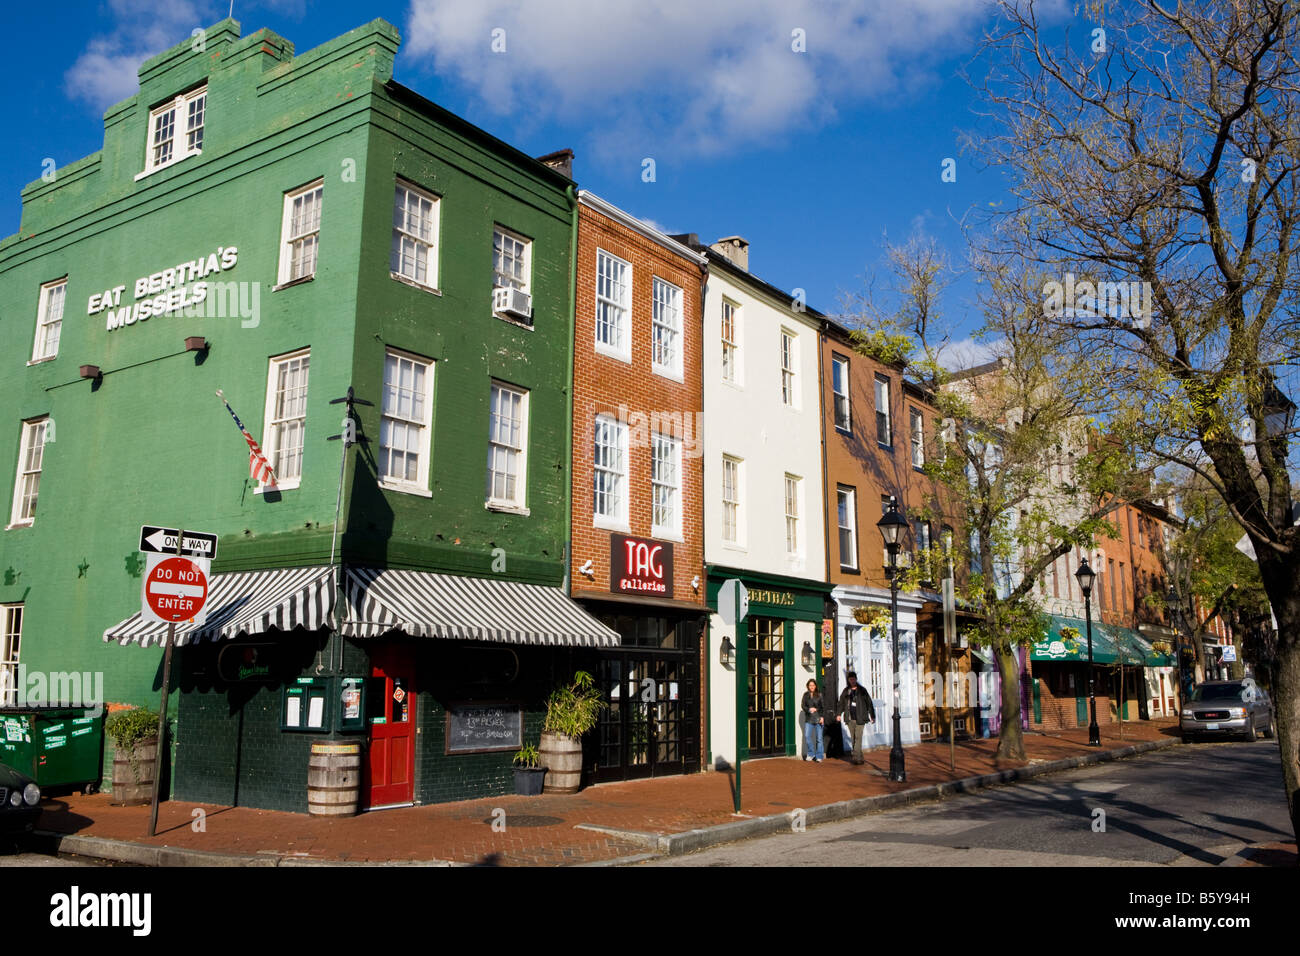 Tiendas coloridas Fells Point Waterfront de Baltimore Maryland Foto de stock